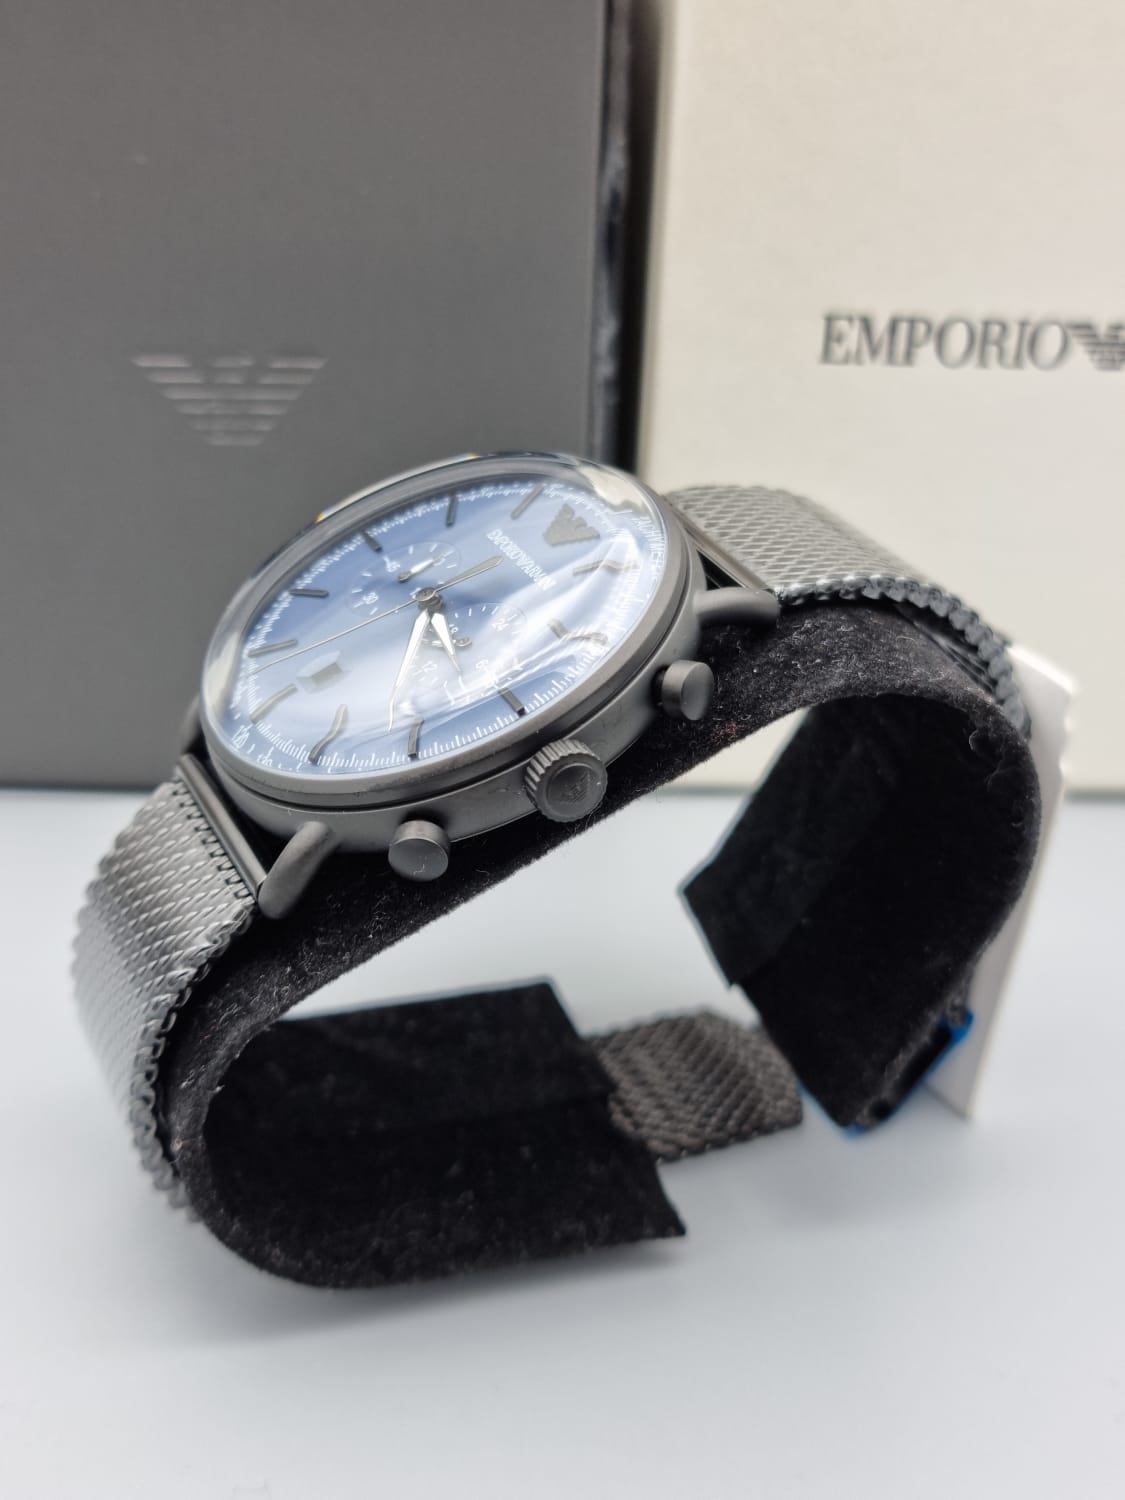 Emporio ARMANI Chronograph Quartz Blue Dial Men's Watch AR11201